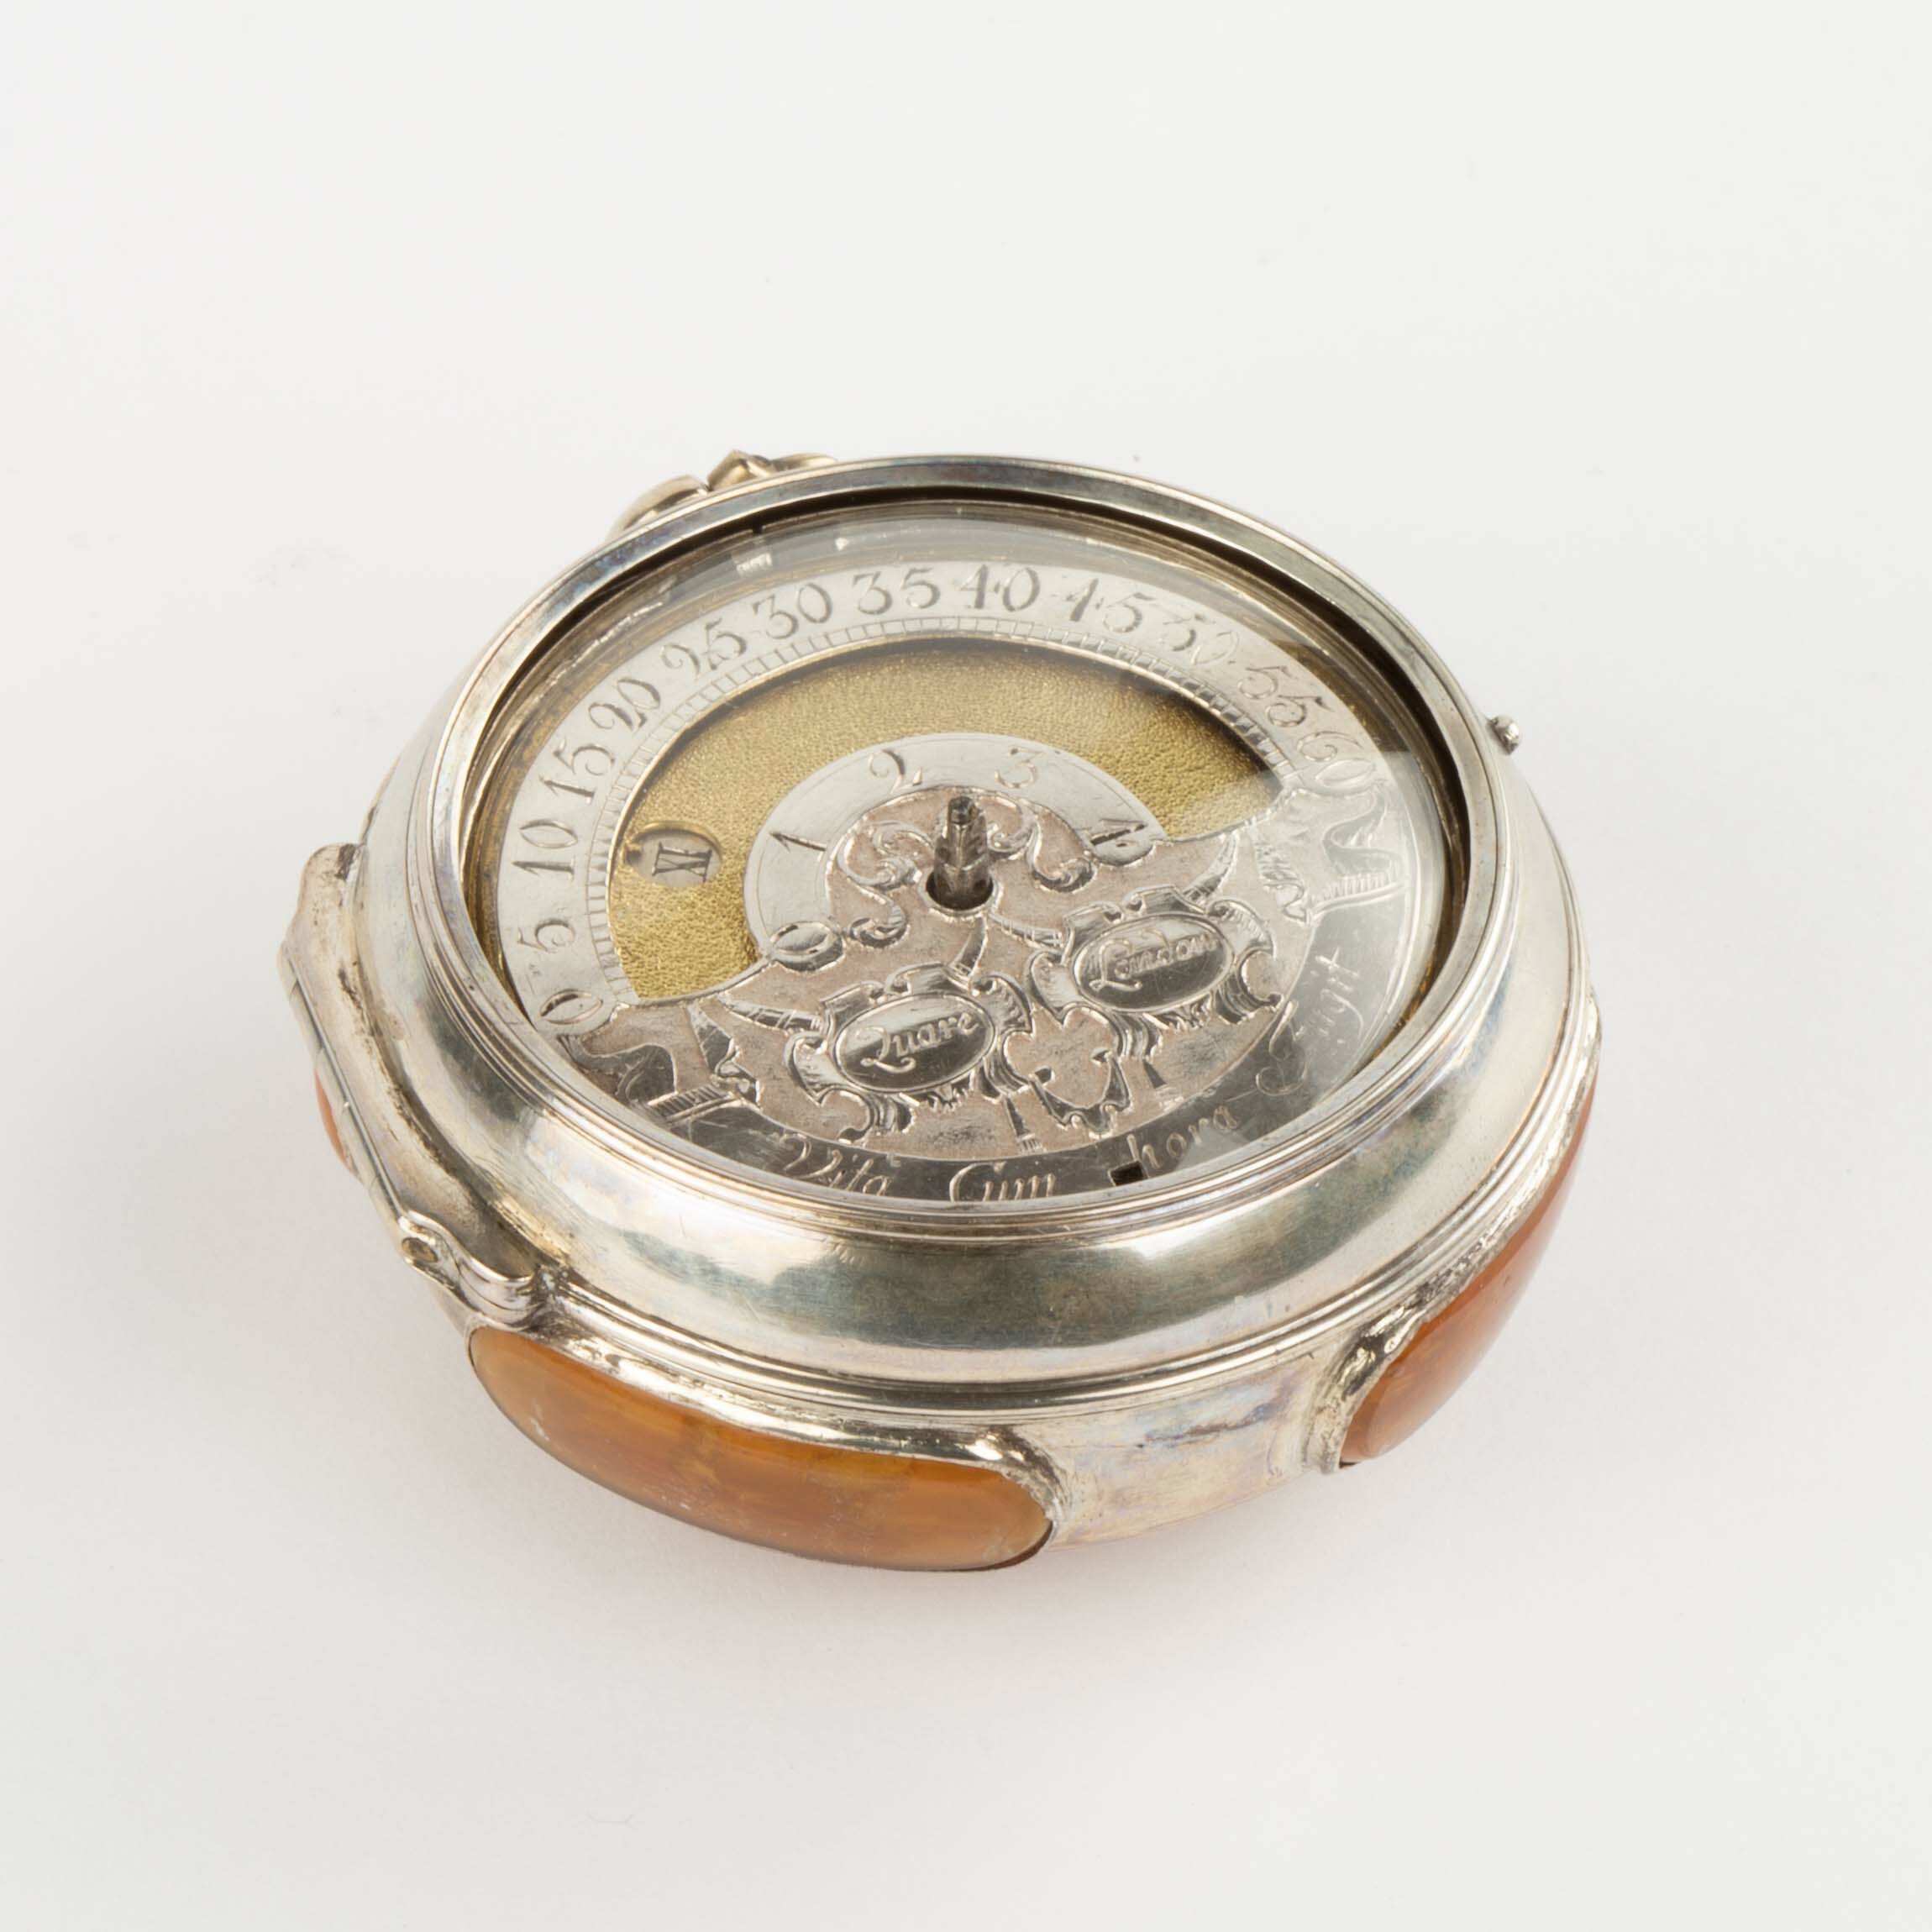 Taschenuhr mit Übergehäuse, Quare, London, um 1700 (Deutsches Uhrenmuseum CC BY-SA)